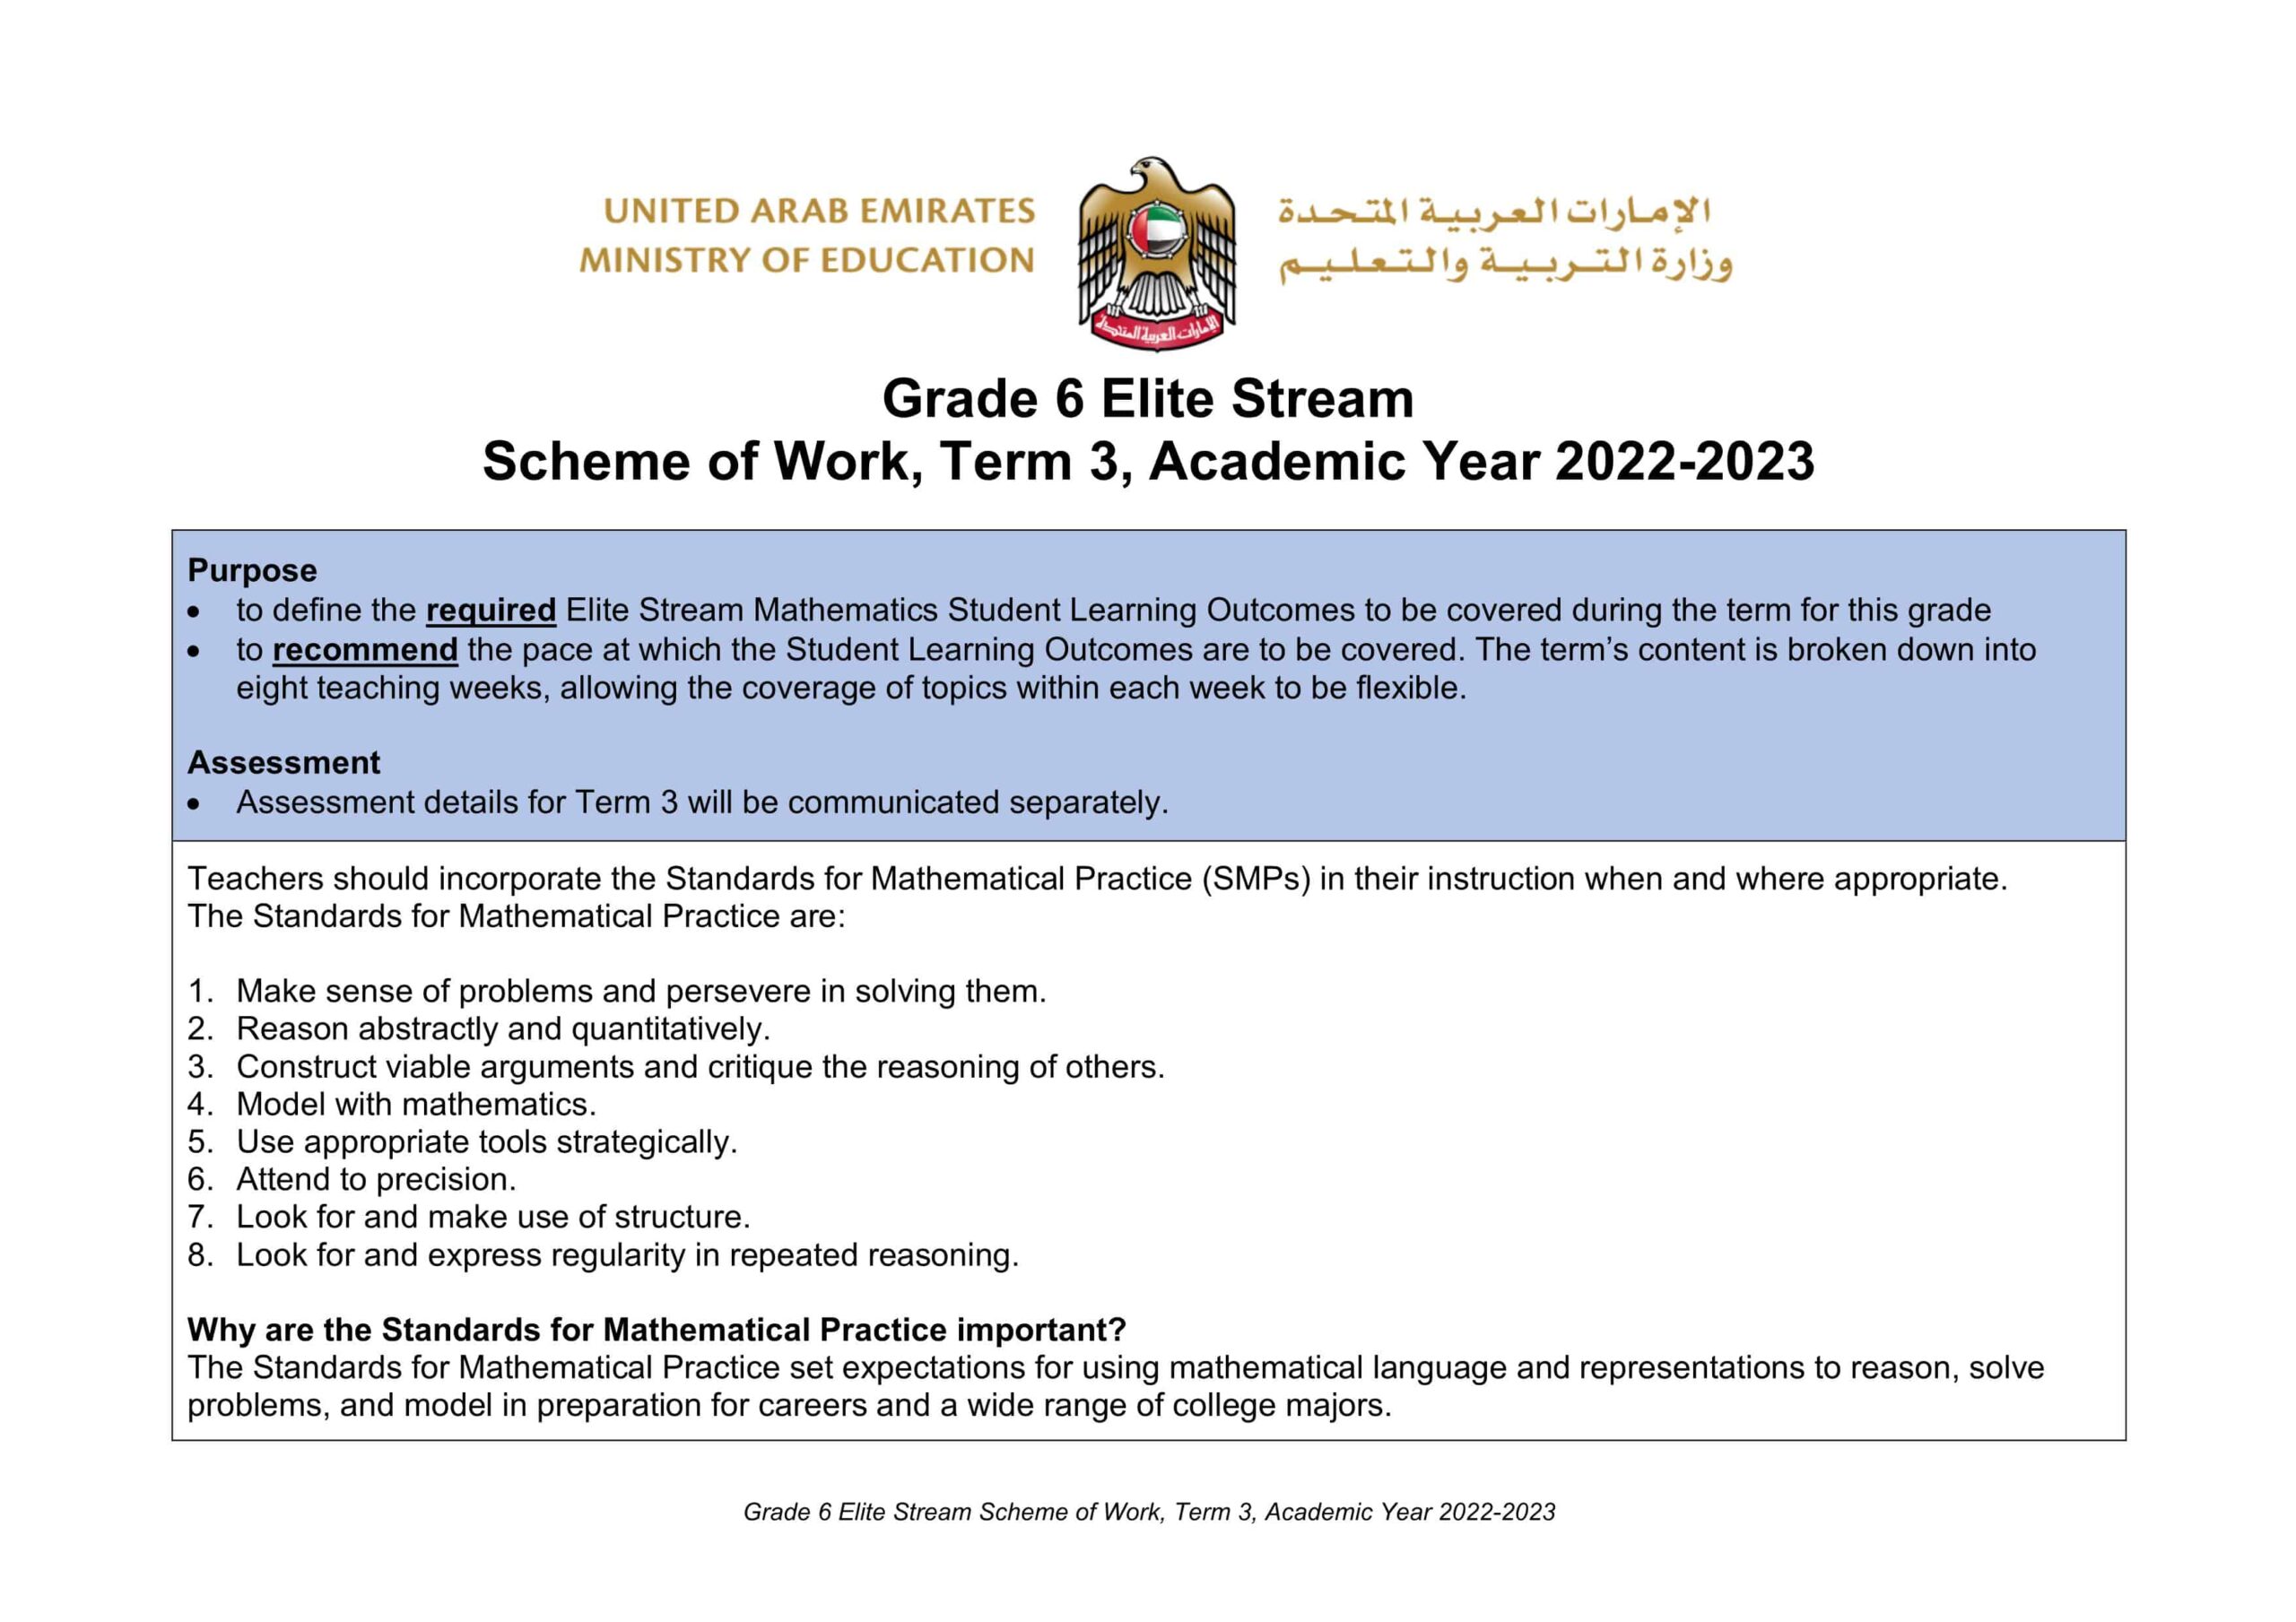 الخطة الفصلية الرياضيات المتكاملة الصف السادس Elite الفصل الدراسي الثالث 2022-2023